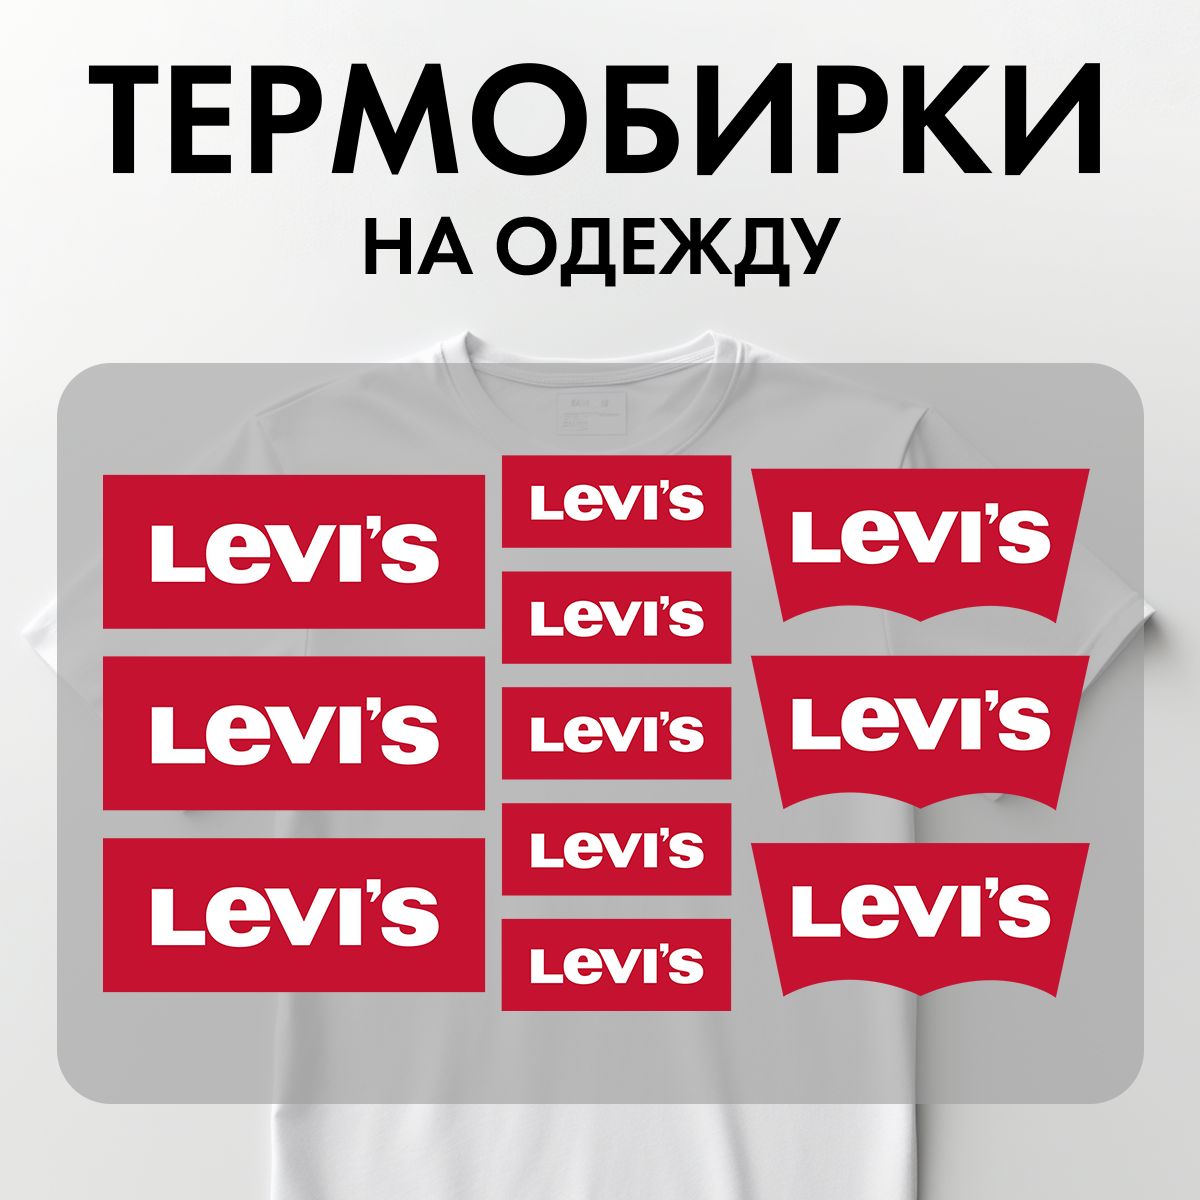 Термонаклейки Rekoy TB-LOGO Lev на одежду, логотип, надписи